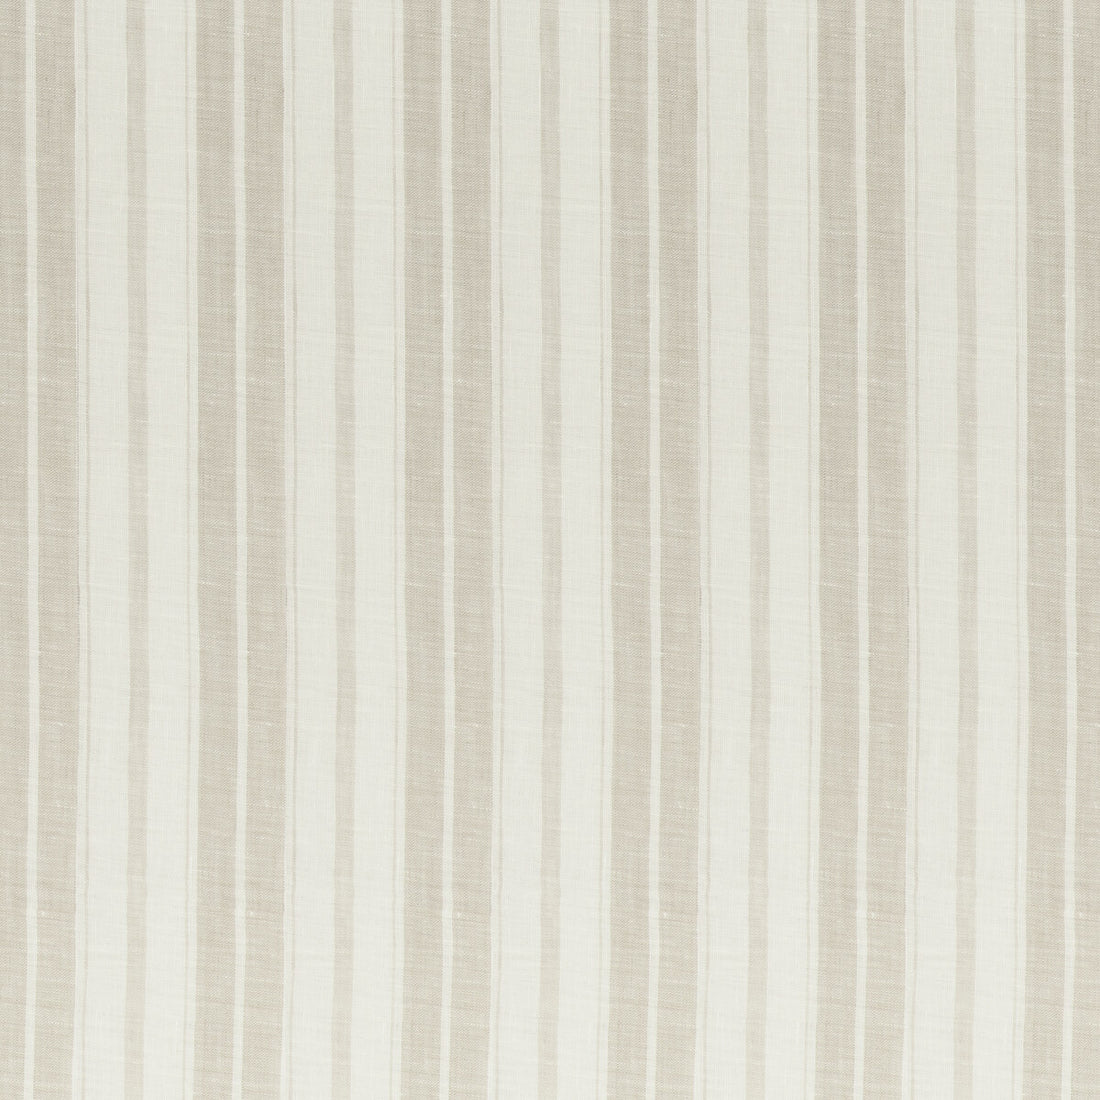 Kravet Design fabric in 4841-116 color - pattern 4841.116.0 - by Kravet Design